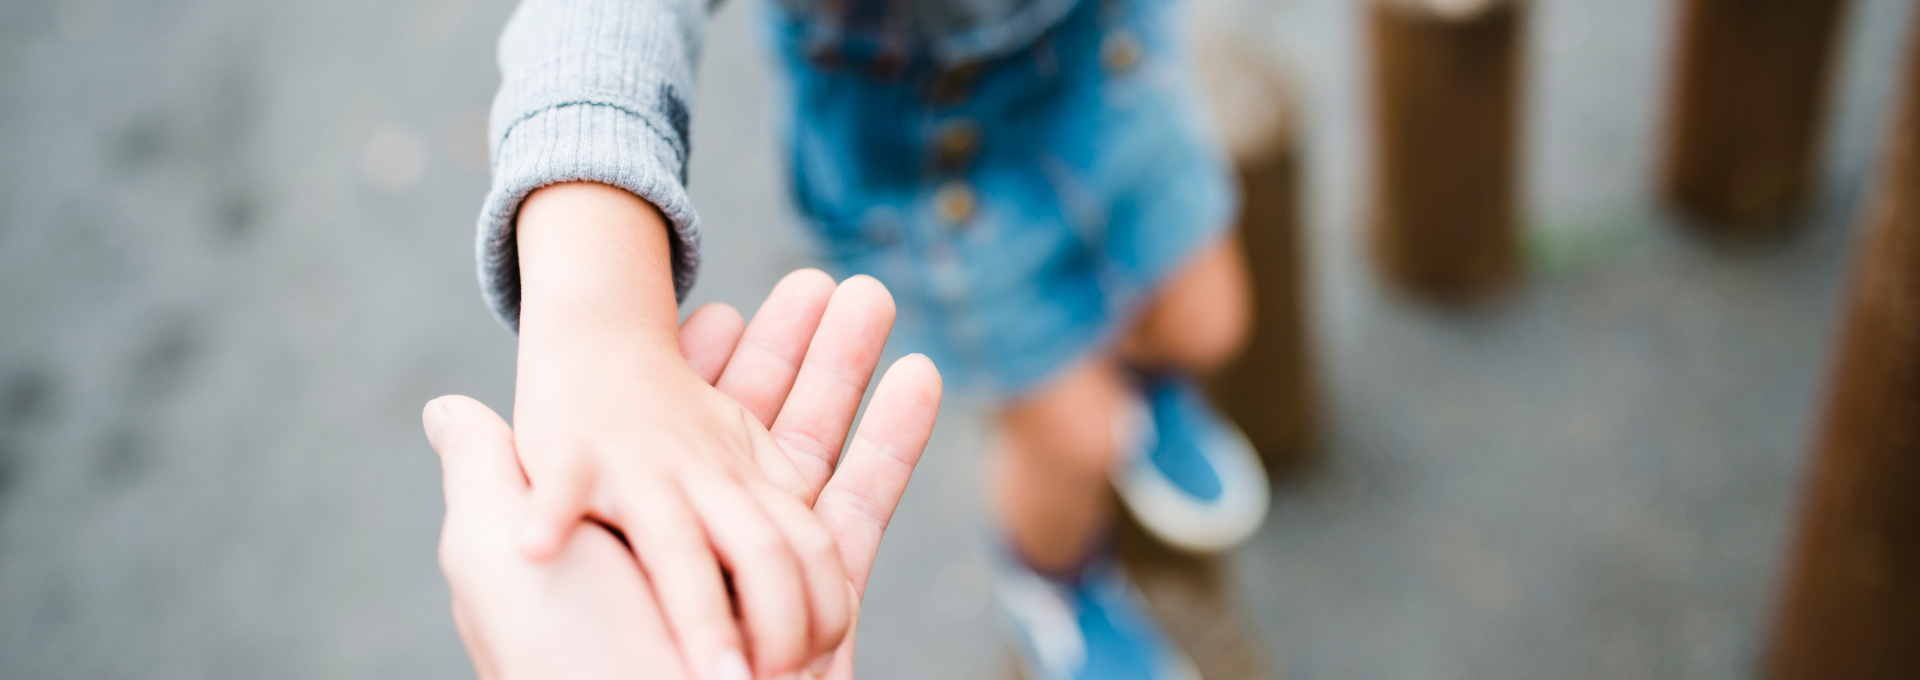 Enfant anxieux tenant la main d'un parent.